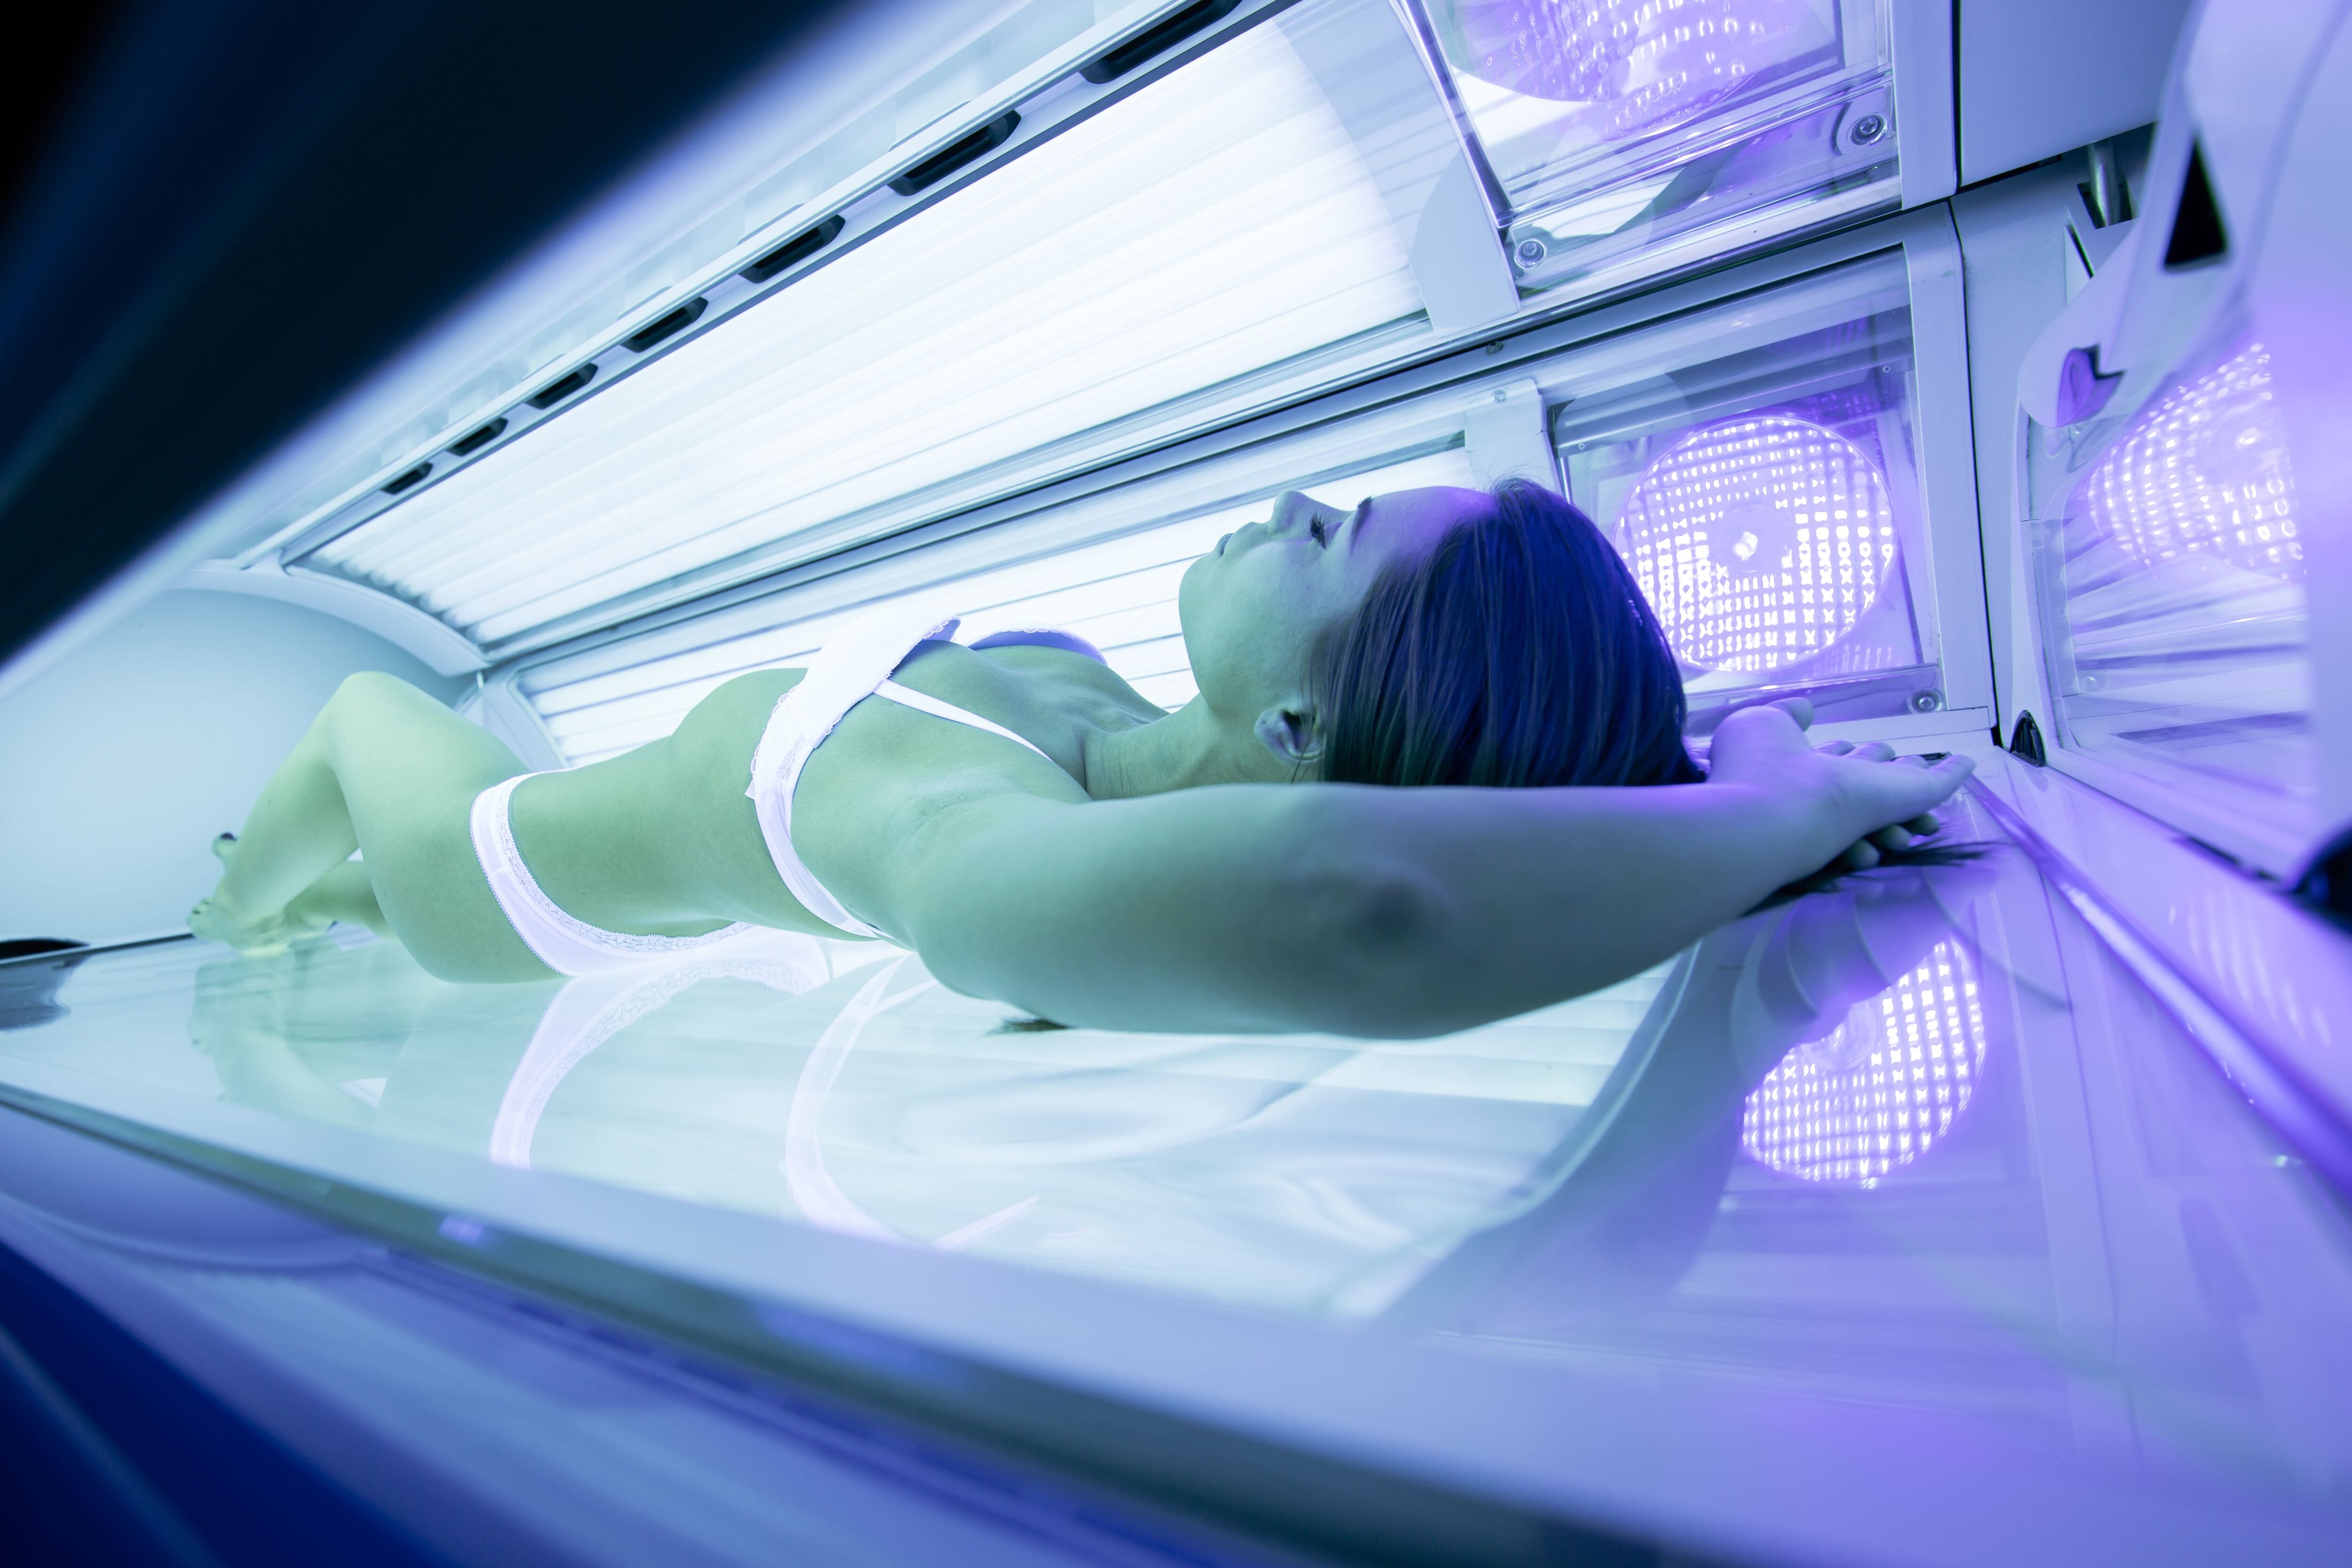 La asociación entre la exposición acumulativa a cama solar y el riesgo de desarrollar carcinoma de células escamosas es el mismo para todas las mujeres, sin importar la duración de su uso o la edad de iniciación (Shutterstock)